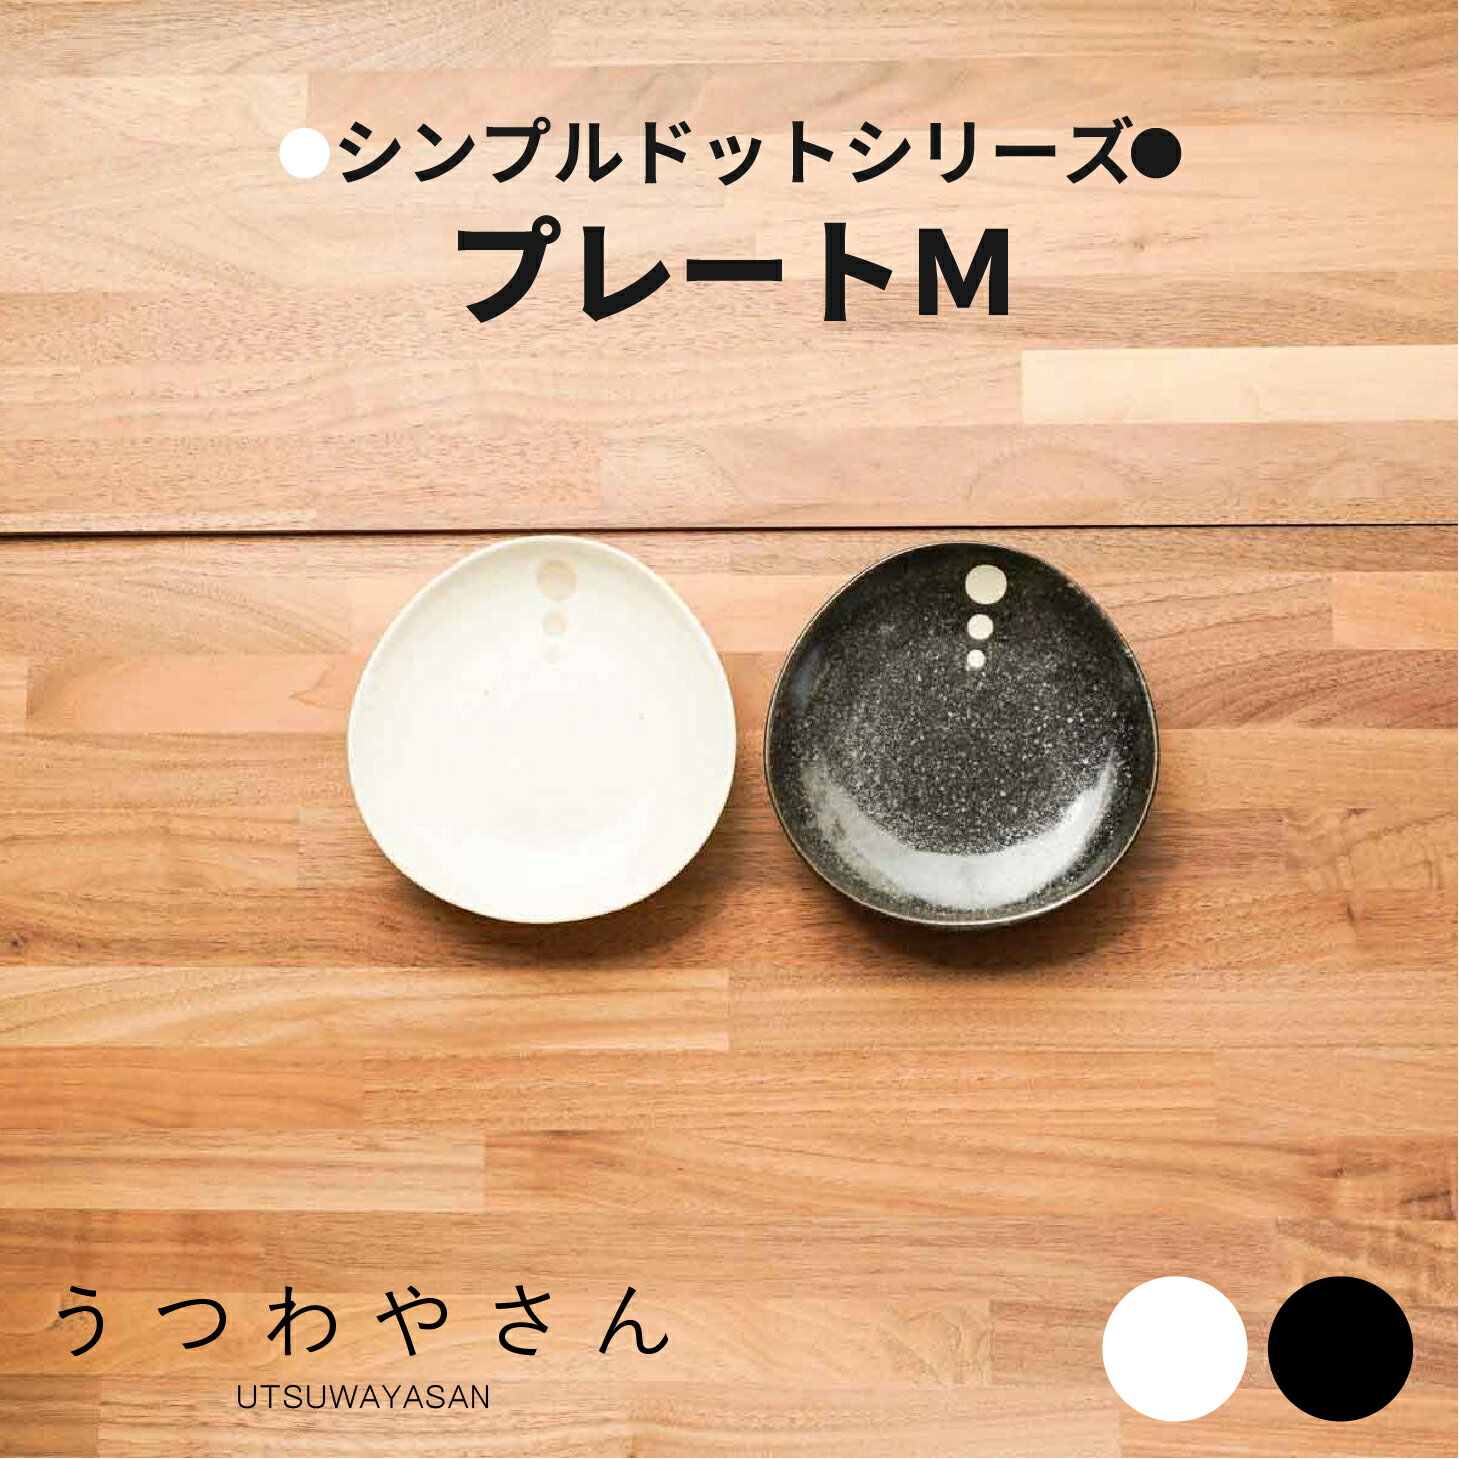 シンプルドット 水玉 白/黒 プレートM 取り皿 5.0寸中皿 和食器 日本製 美濃焼 和食器 おしゃれ